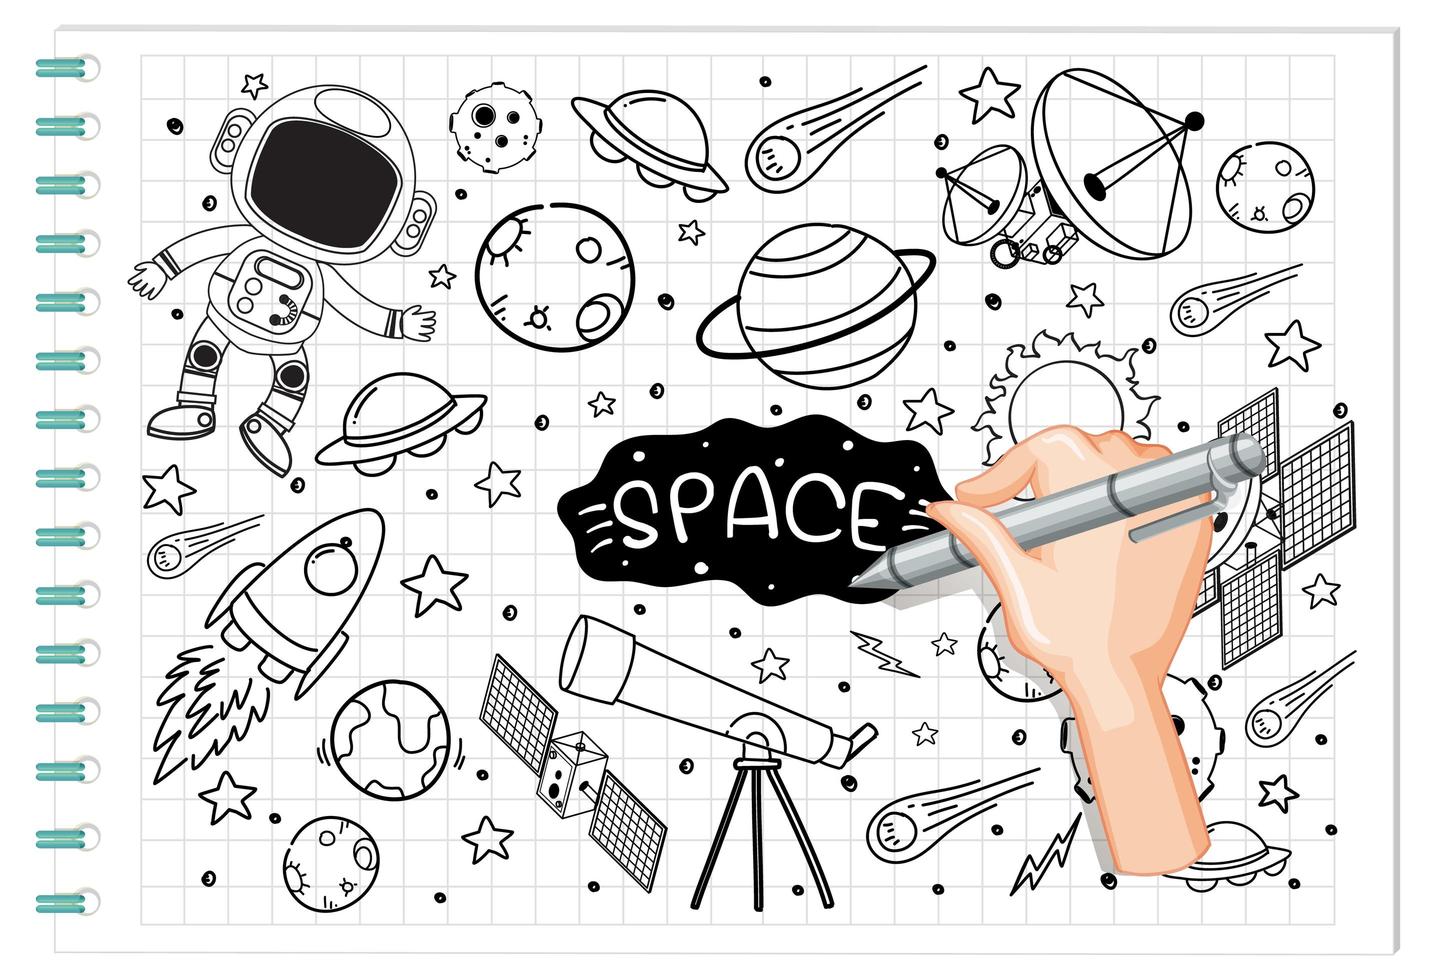 Élément d'espace de dessin à la main dans un style doodle ou croquis sur papier vecteur